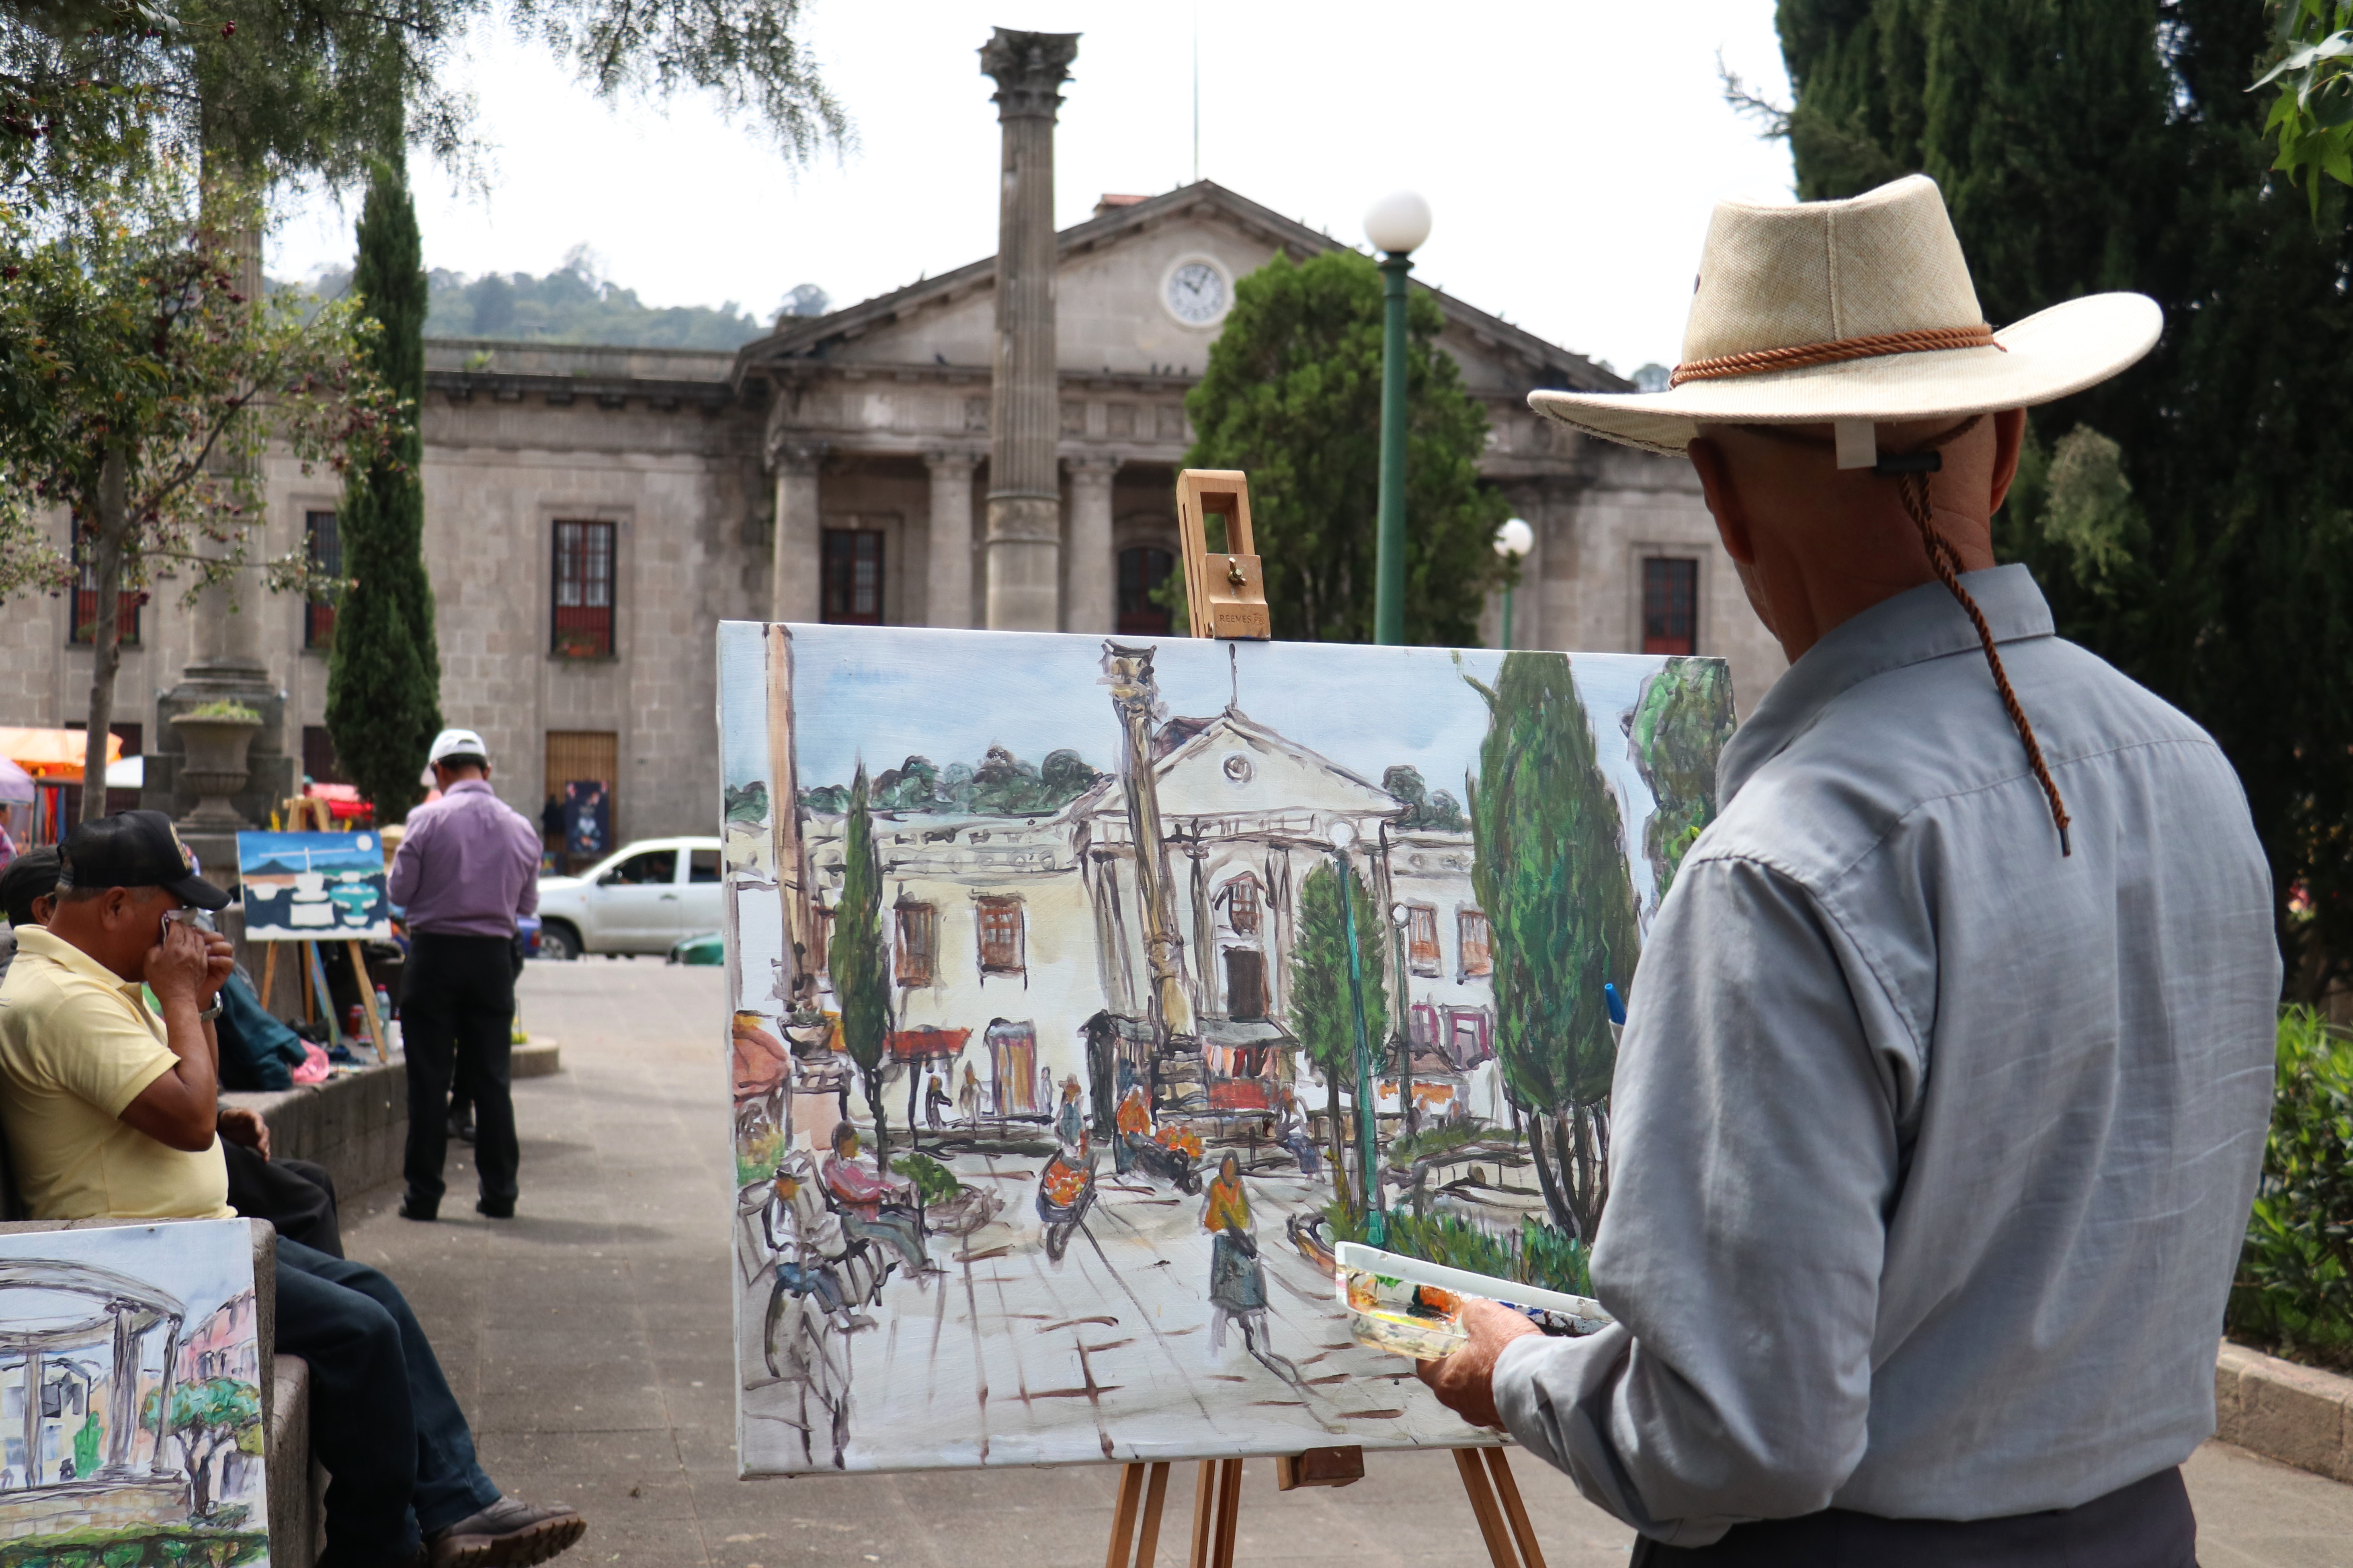 Uno de los artistas se inspiró en pintar la Casa de la Cultura y parte del Parque Central de Xela. (Foto Prensa Libre: Raúl Juárez)